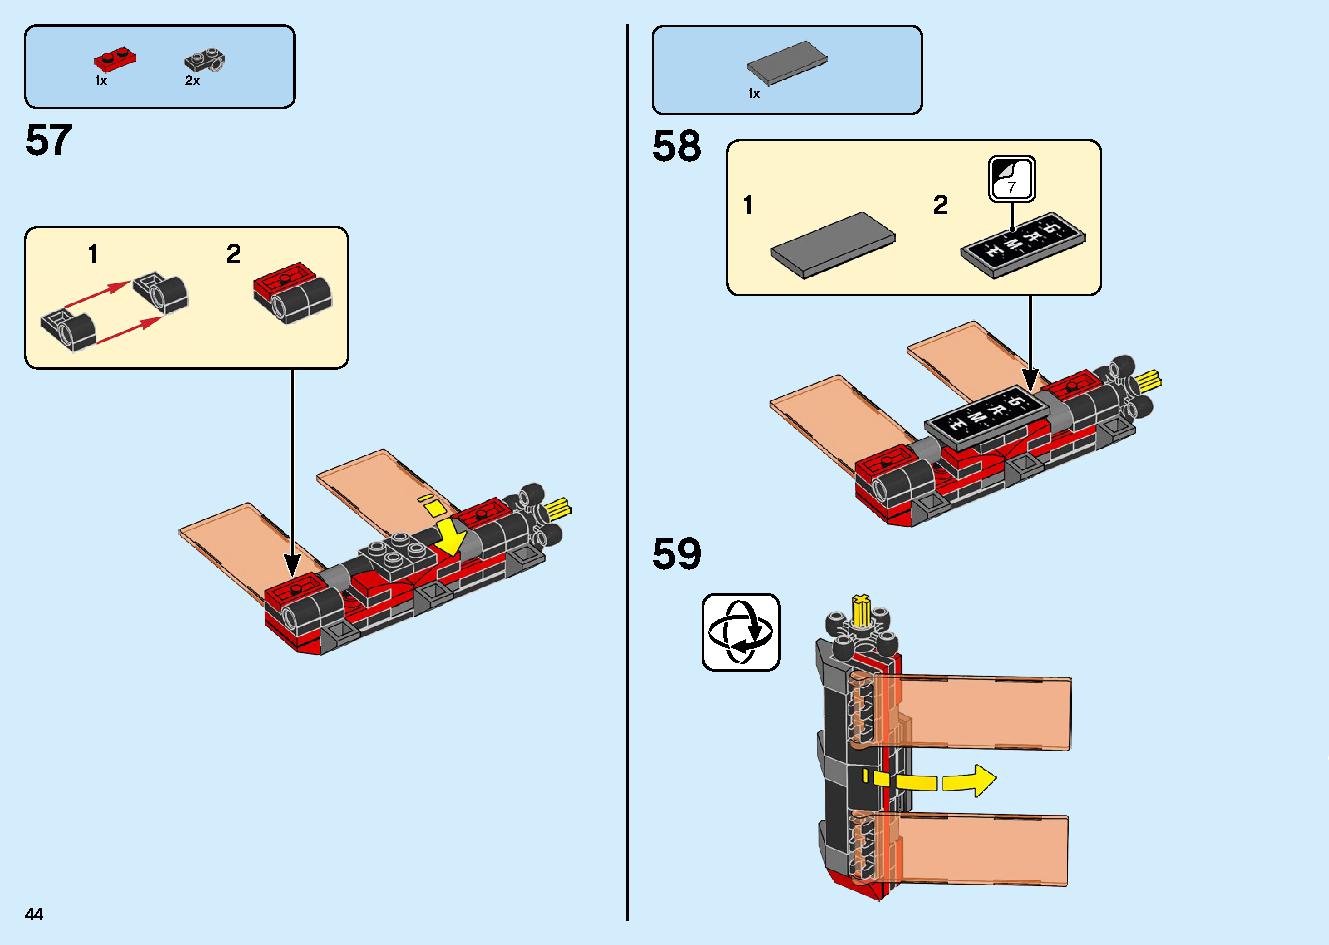 マッドキング神殿 71712 レゴの商品情報 レゴの説明書・組立方法 44 page